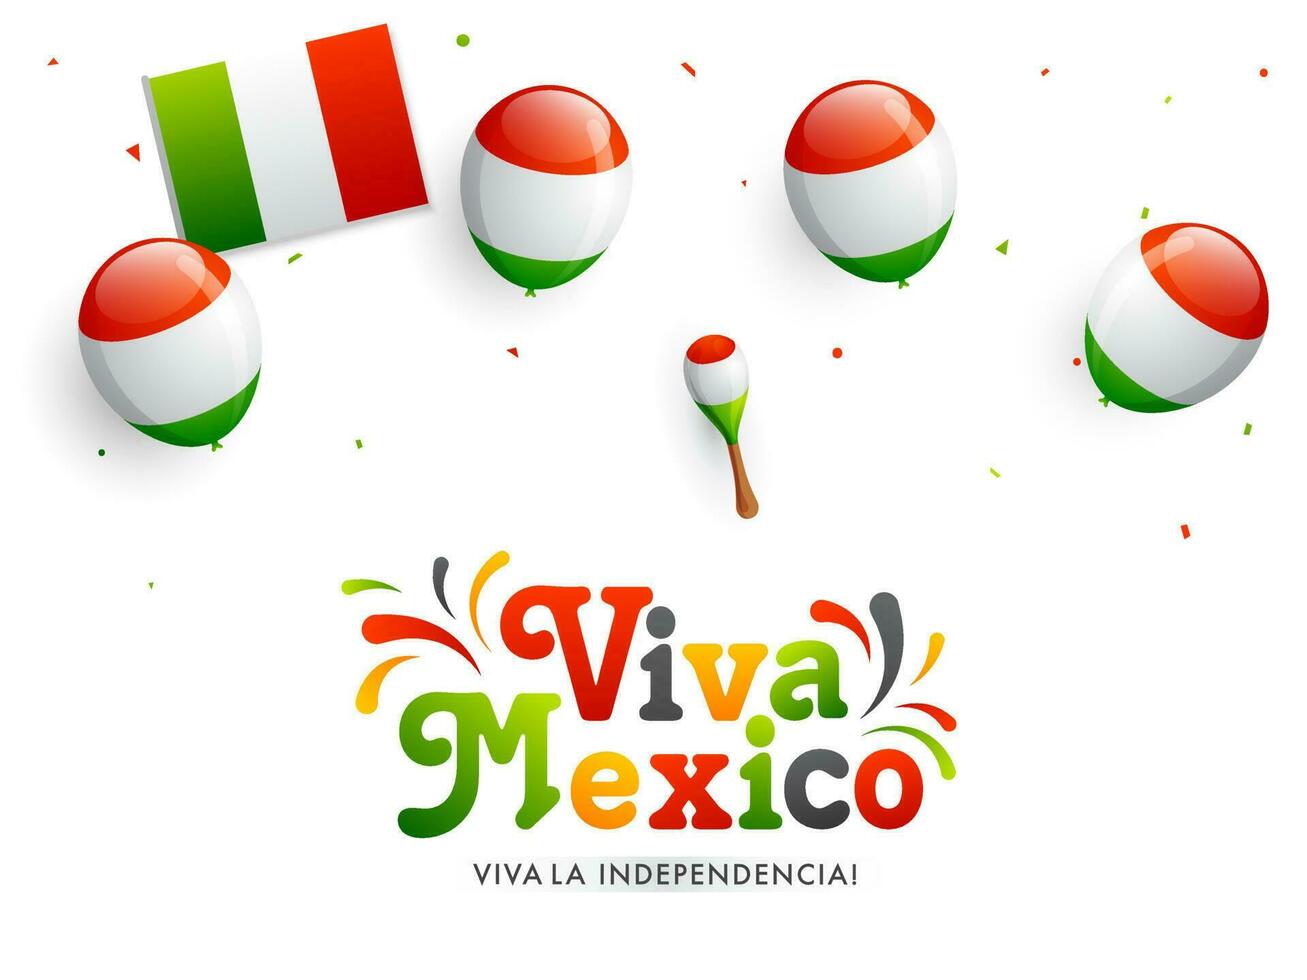 viva Mexico onafhankelijk dag viering banier of poster ontwerp versierd met ballonnen, maracas in Mexicaans vlag kleur. vector